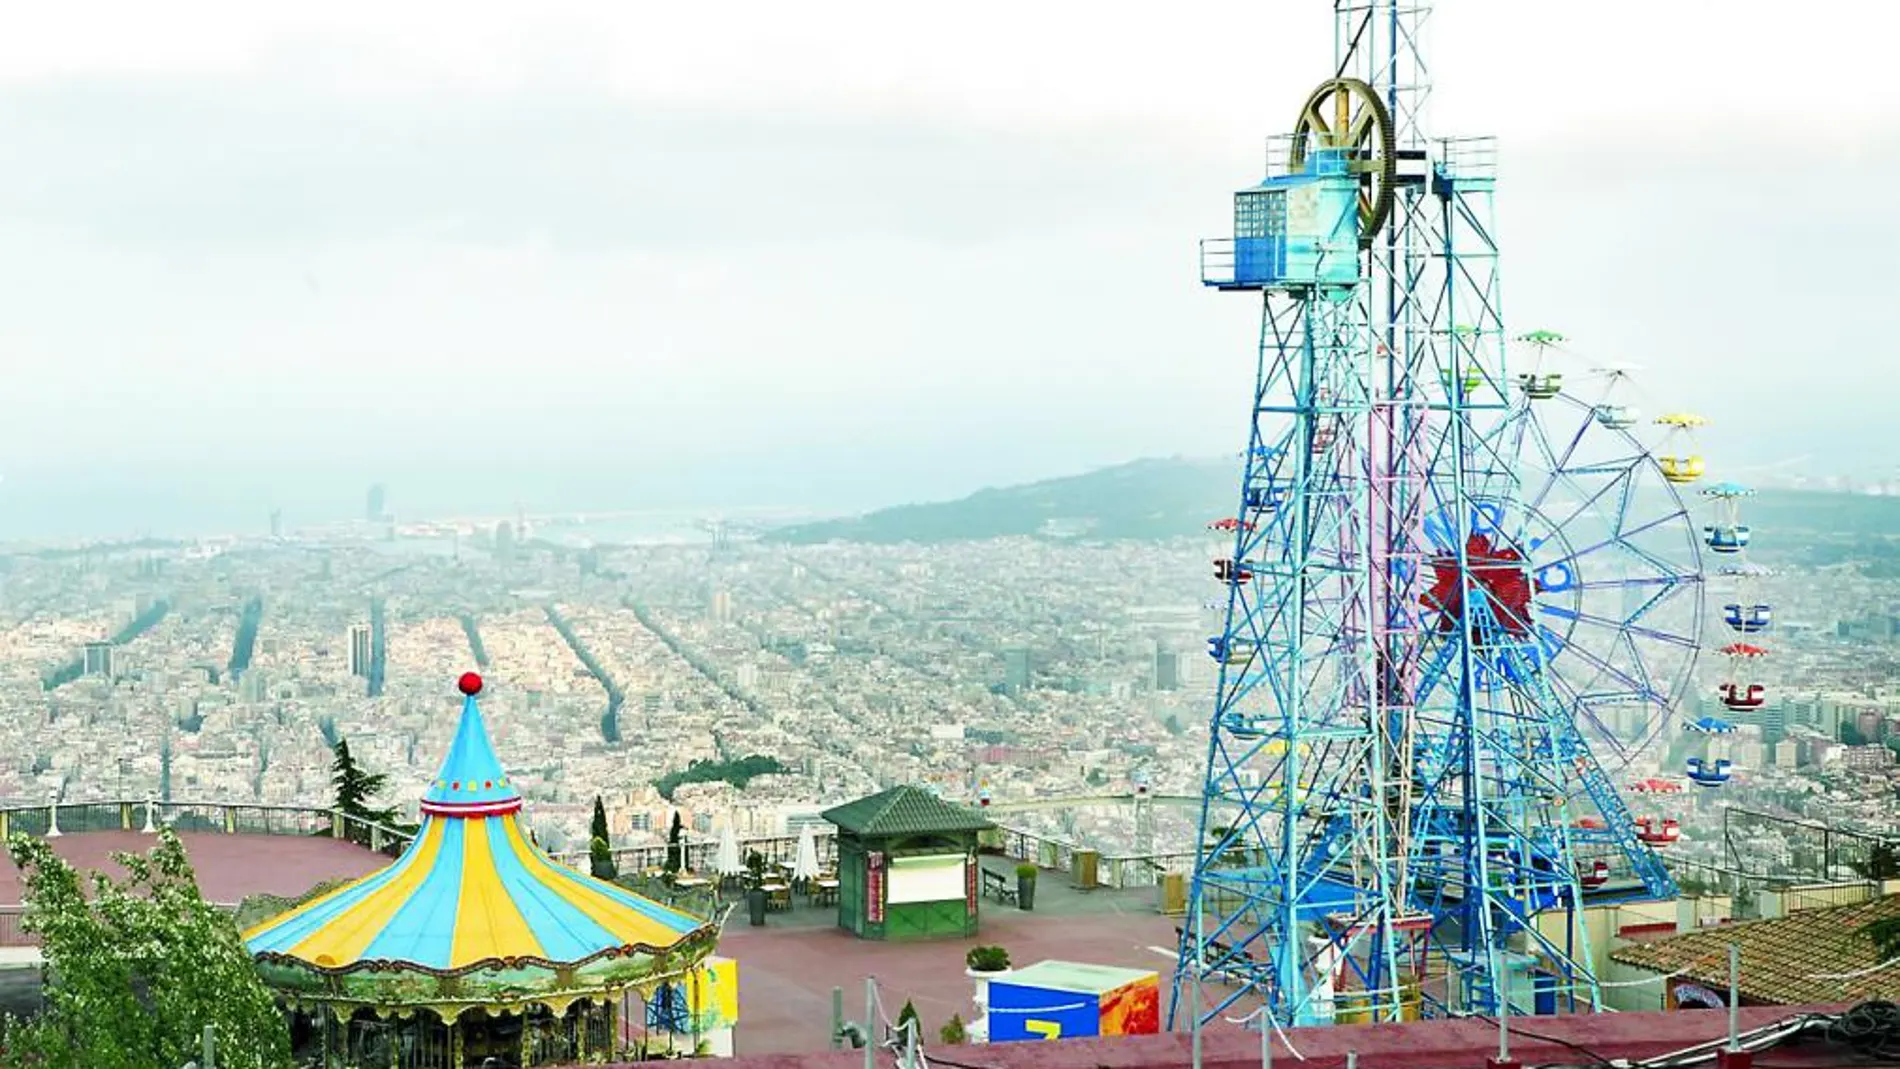 El parque de atracciones del Tibidabo ofrece diversión con atracciones para todas las edades